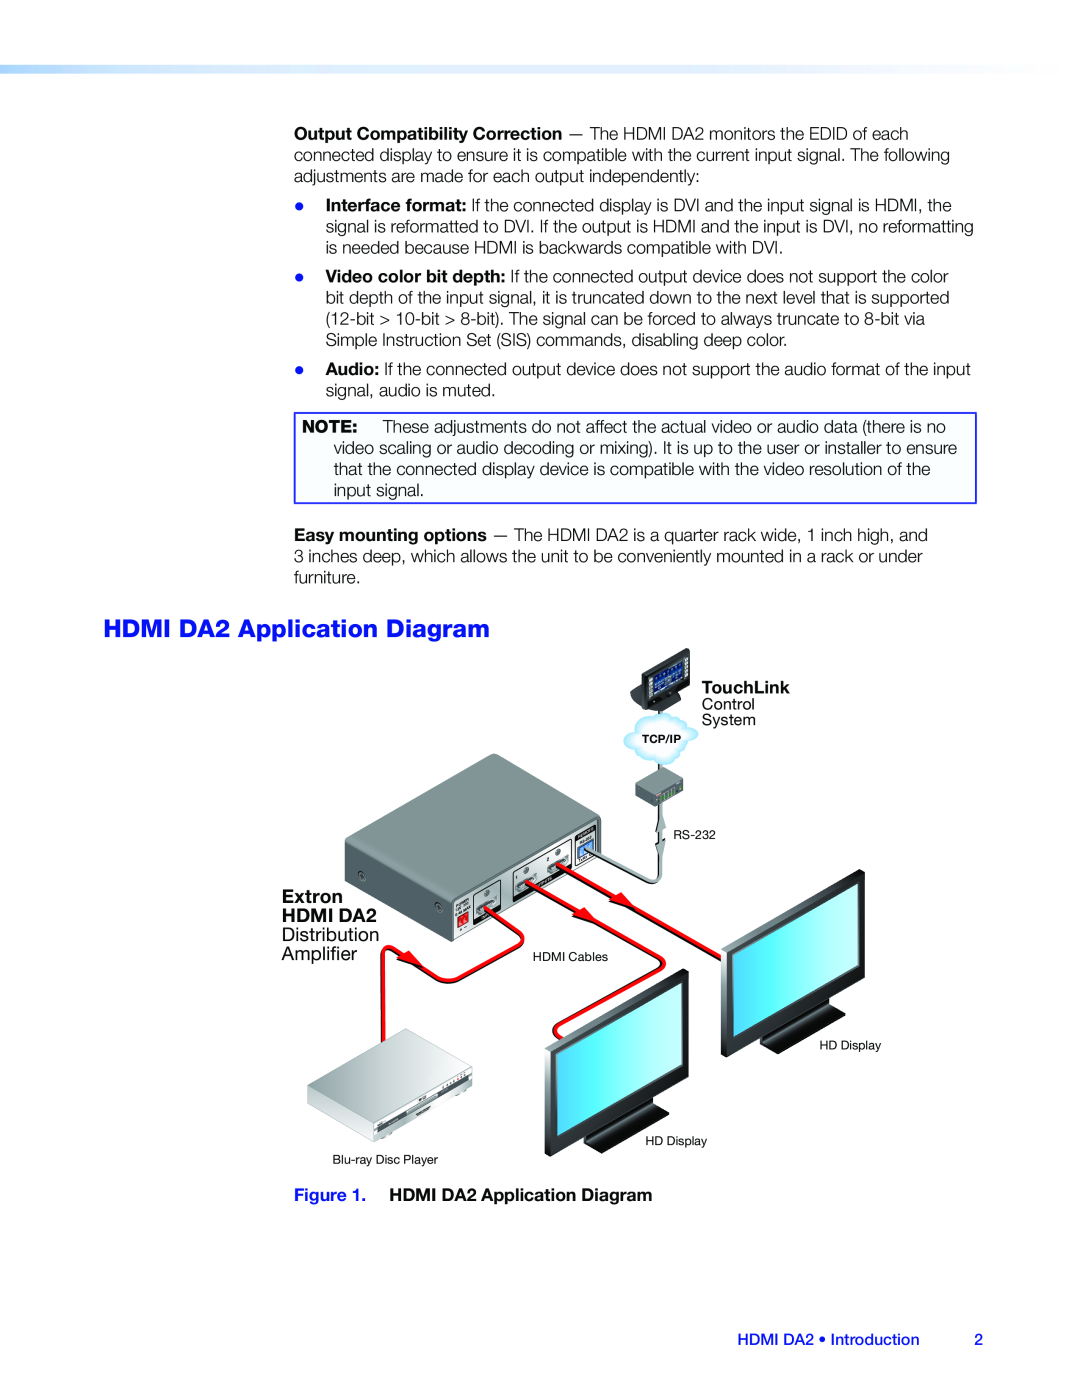 Extron electronic manual HDMI DA2 Application Diagram, Extron HDMI DA2, Distribution Amplier 